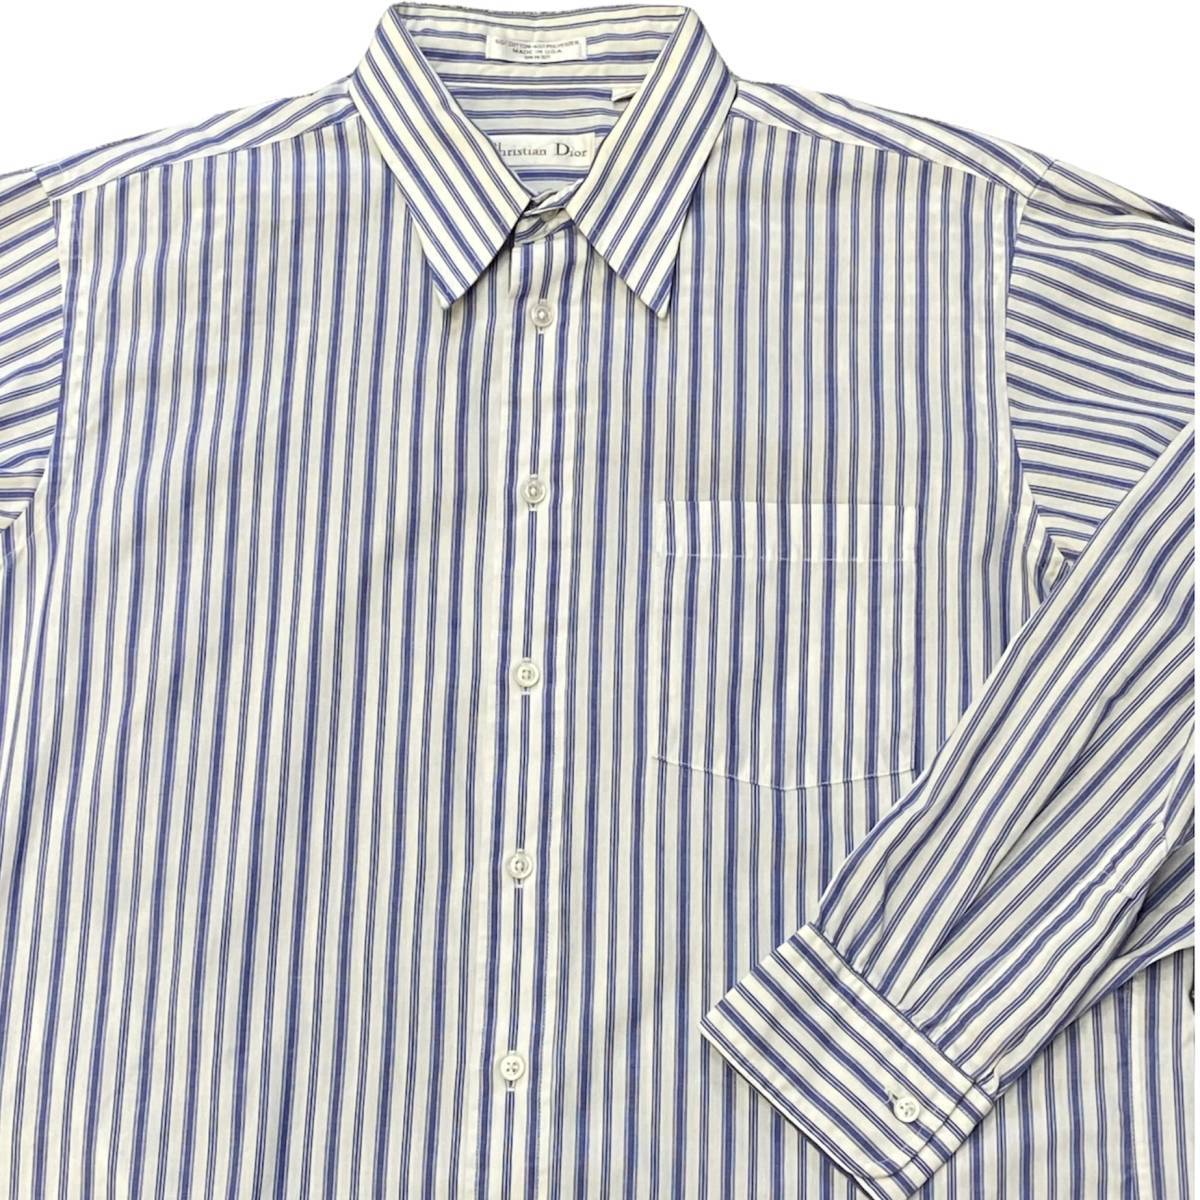 80s Christian Dior ストライプ柄 ボタンダウンシャツ 16 32-33 ブルー×ホワイト 長袖 シャツ クリスチャン ディオール ヴィンテージ_画像1